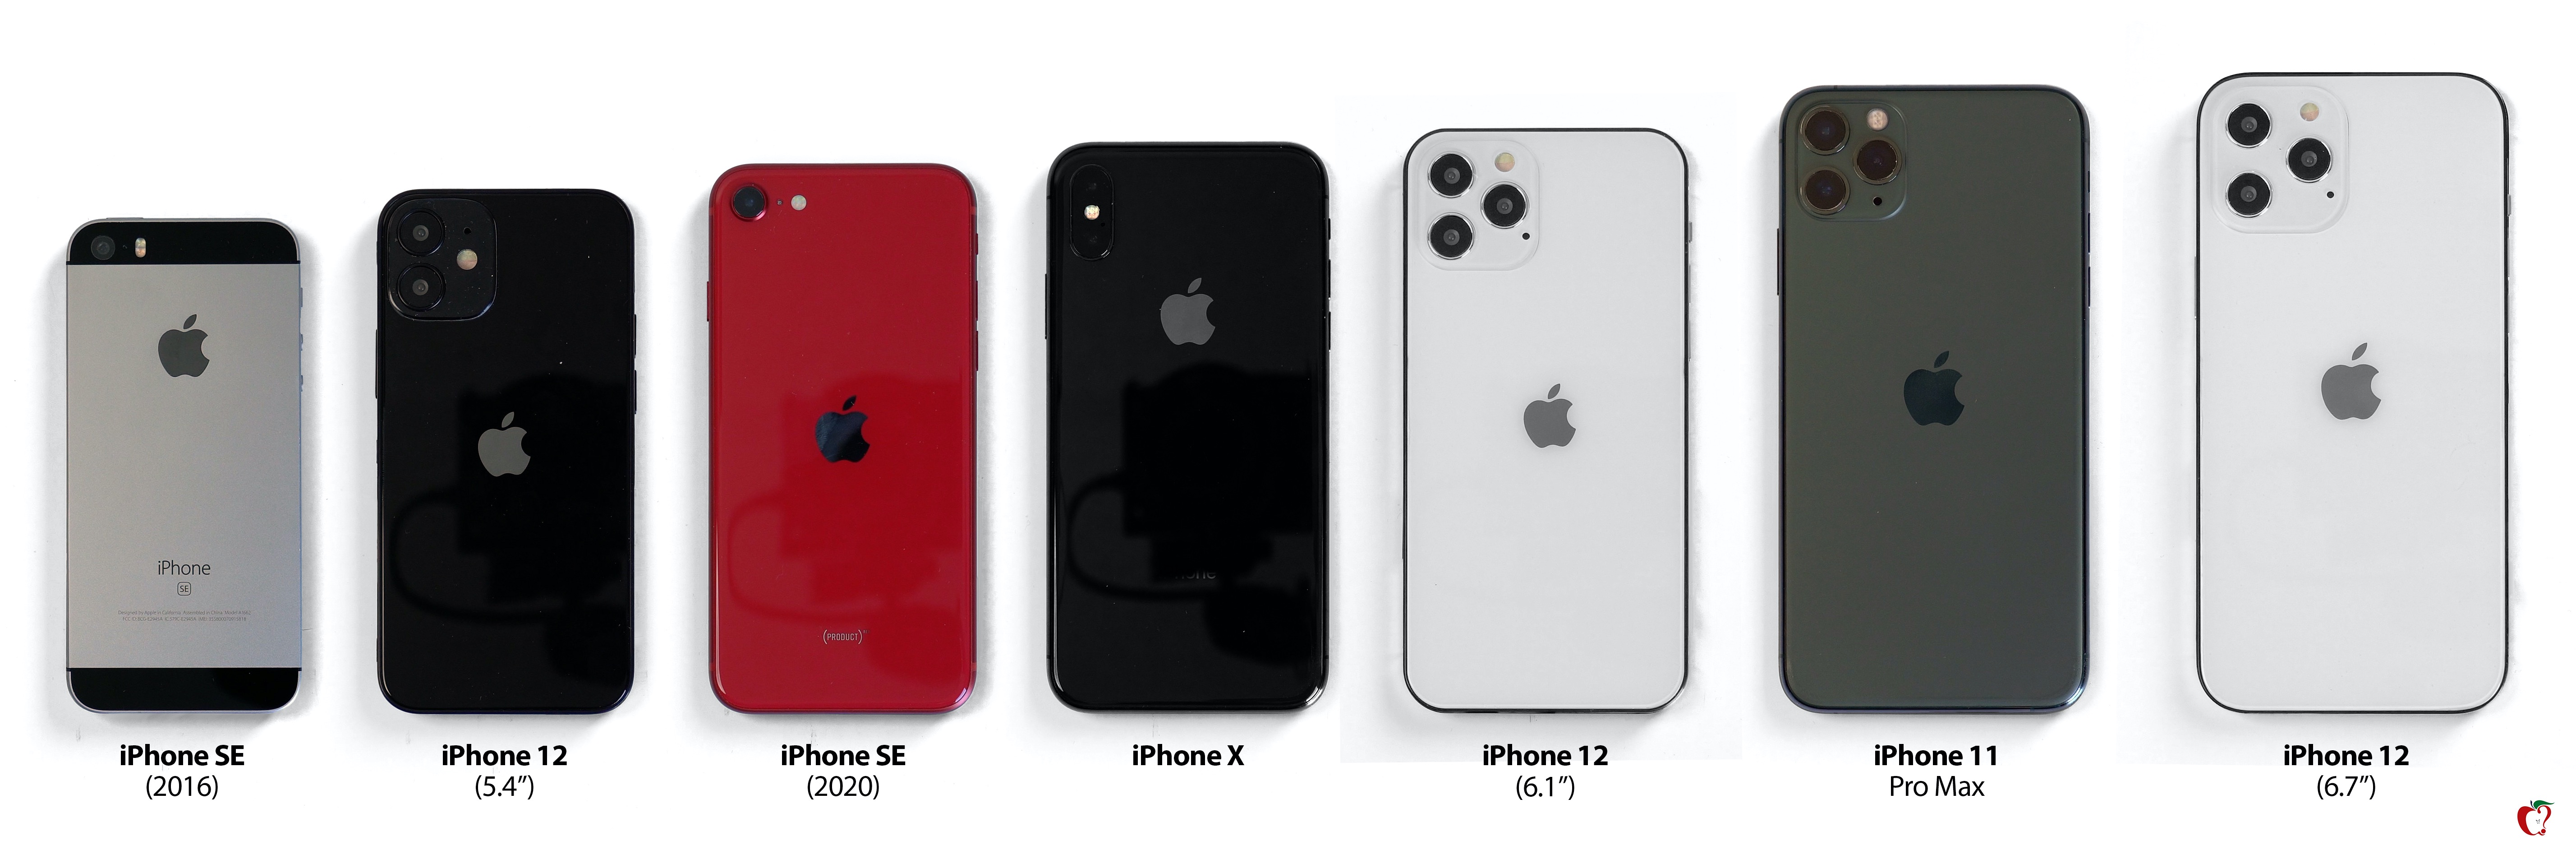 歴代iPhoneの大きさを比較